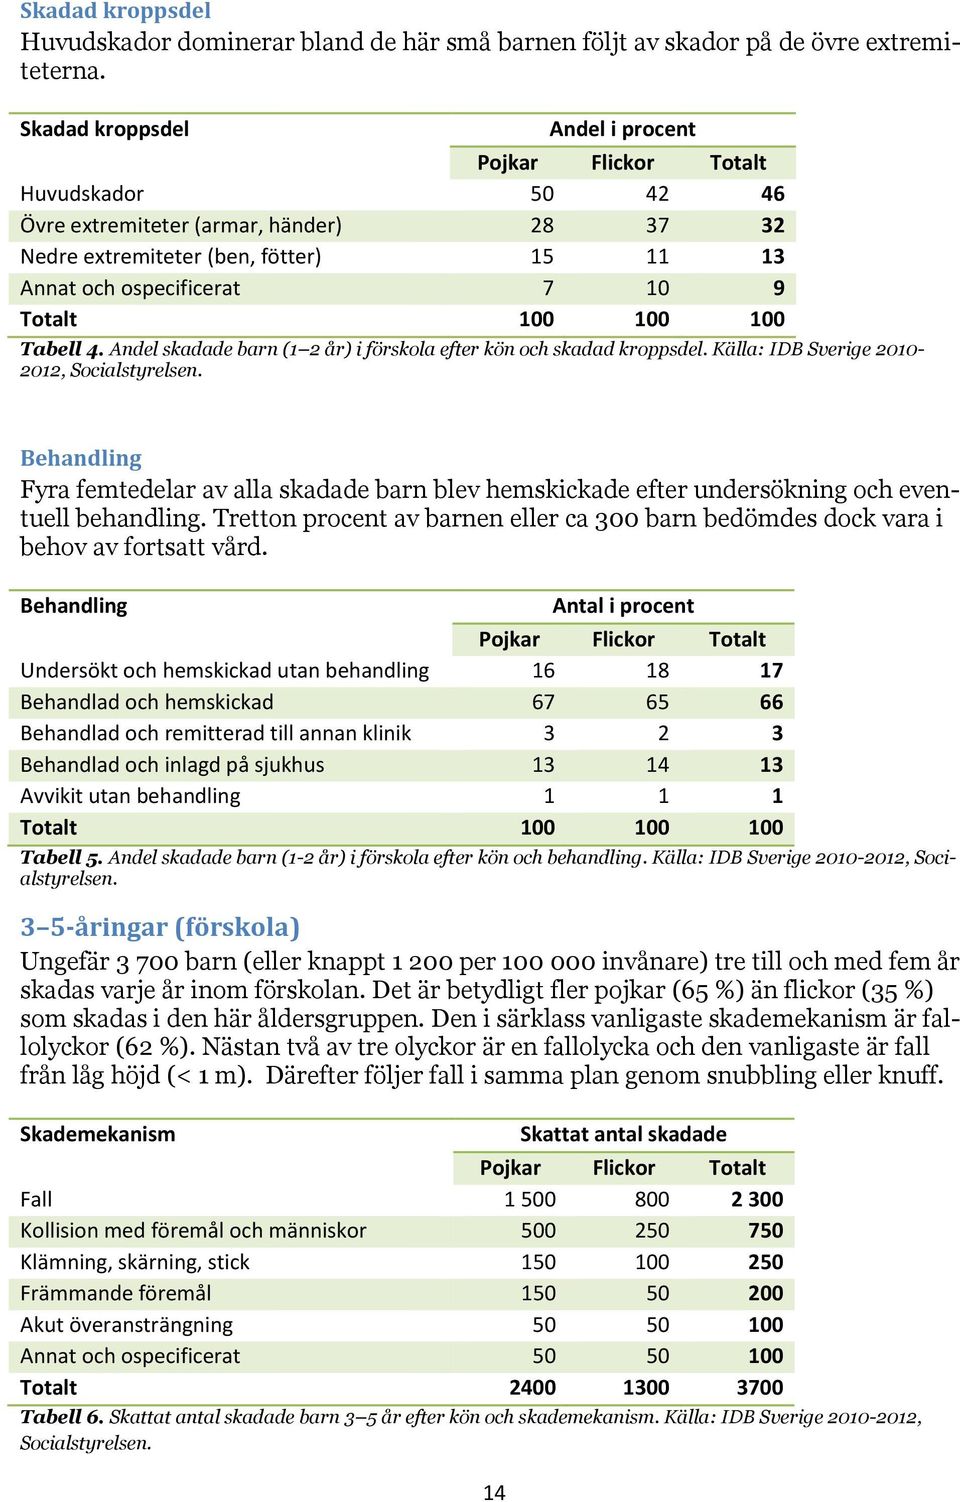 Andel skadade barn (1 2 år) i förskola efter kön och skadad kroppsdel. Källa: IDB Sverige 2010-2012, Socialstyrelsen.